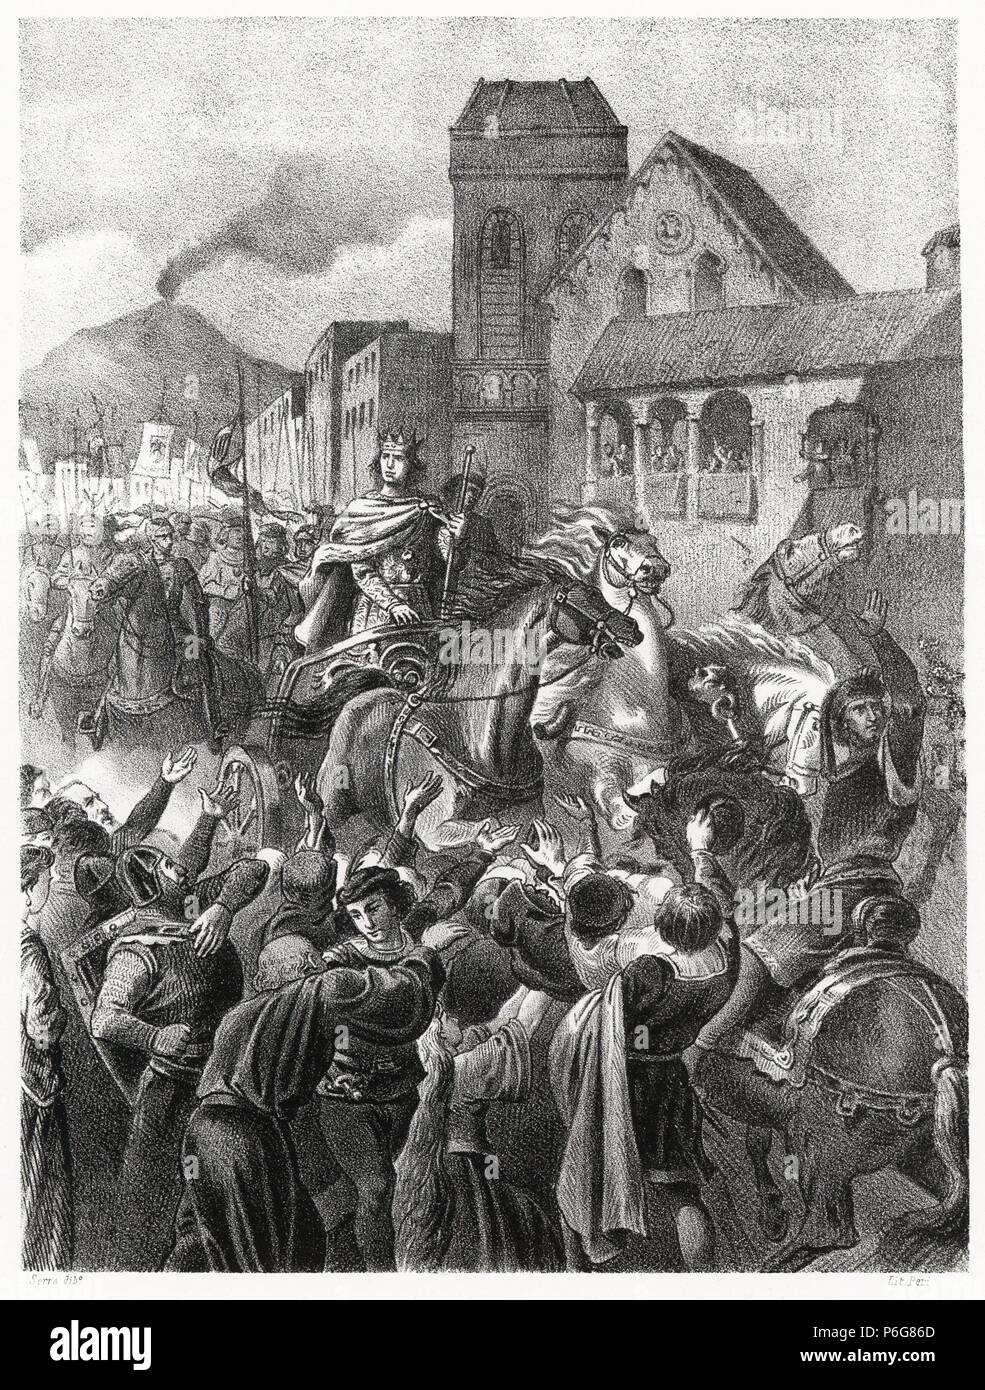 Historia de España. Entrada triunfal en Nápoles de don Alfonso V de Aragón (1396-1458), el Magnánimo, en 1442. Grabado de 1872. Stock Photo